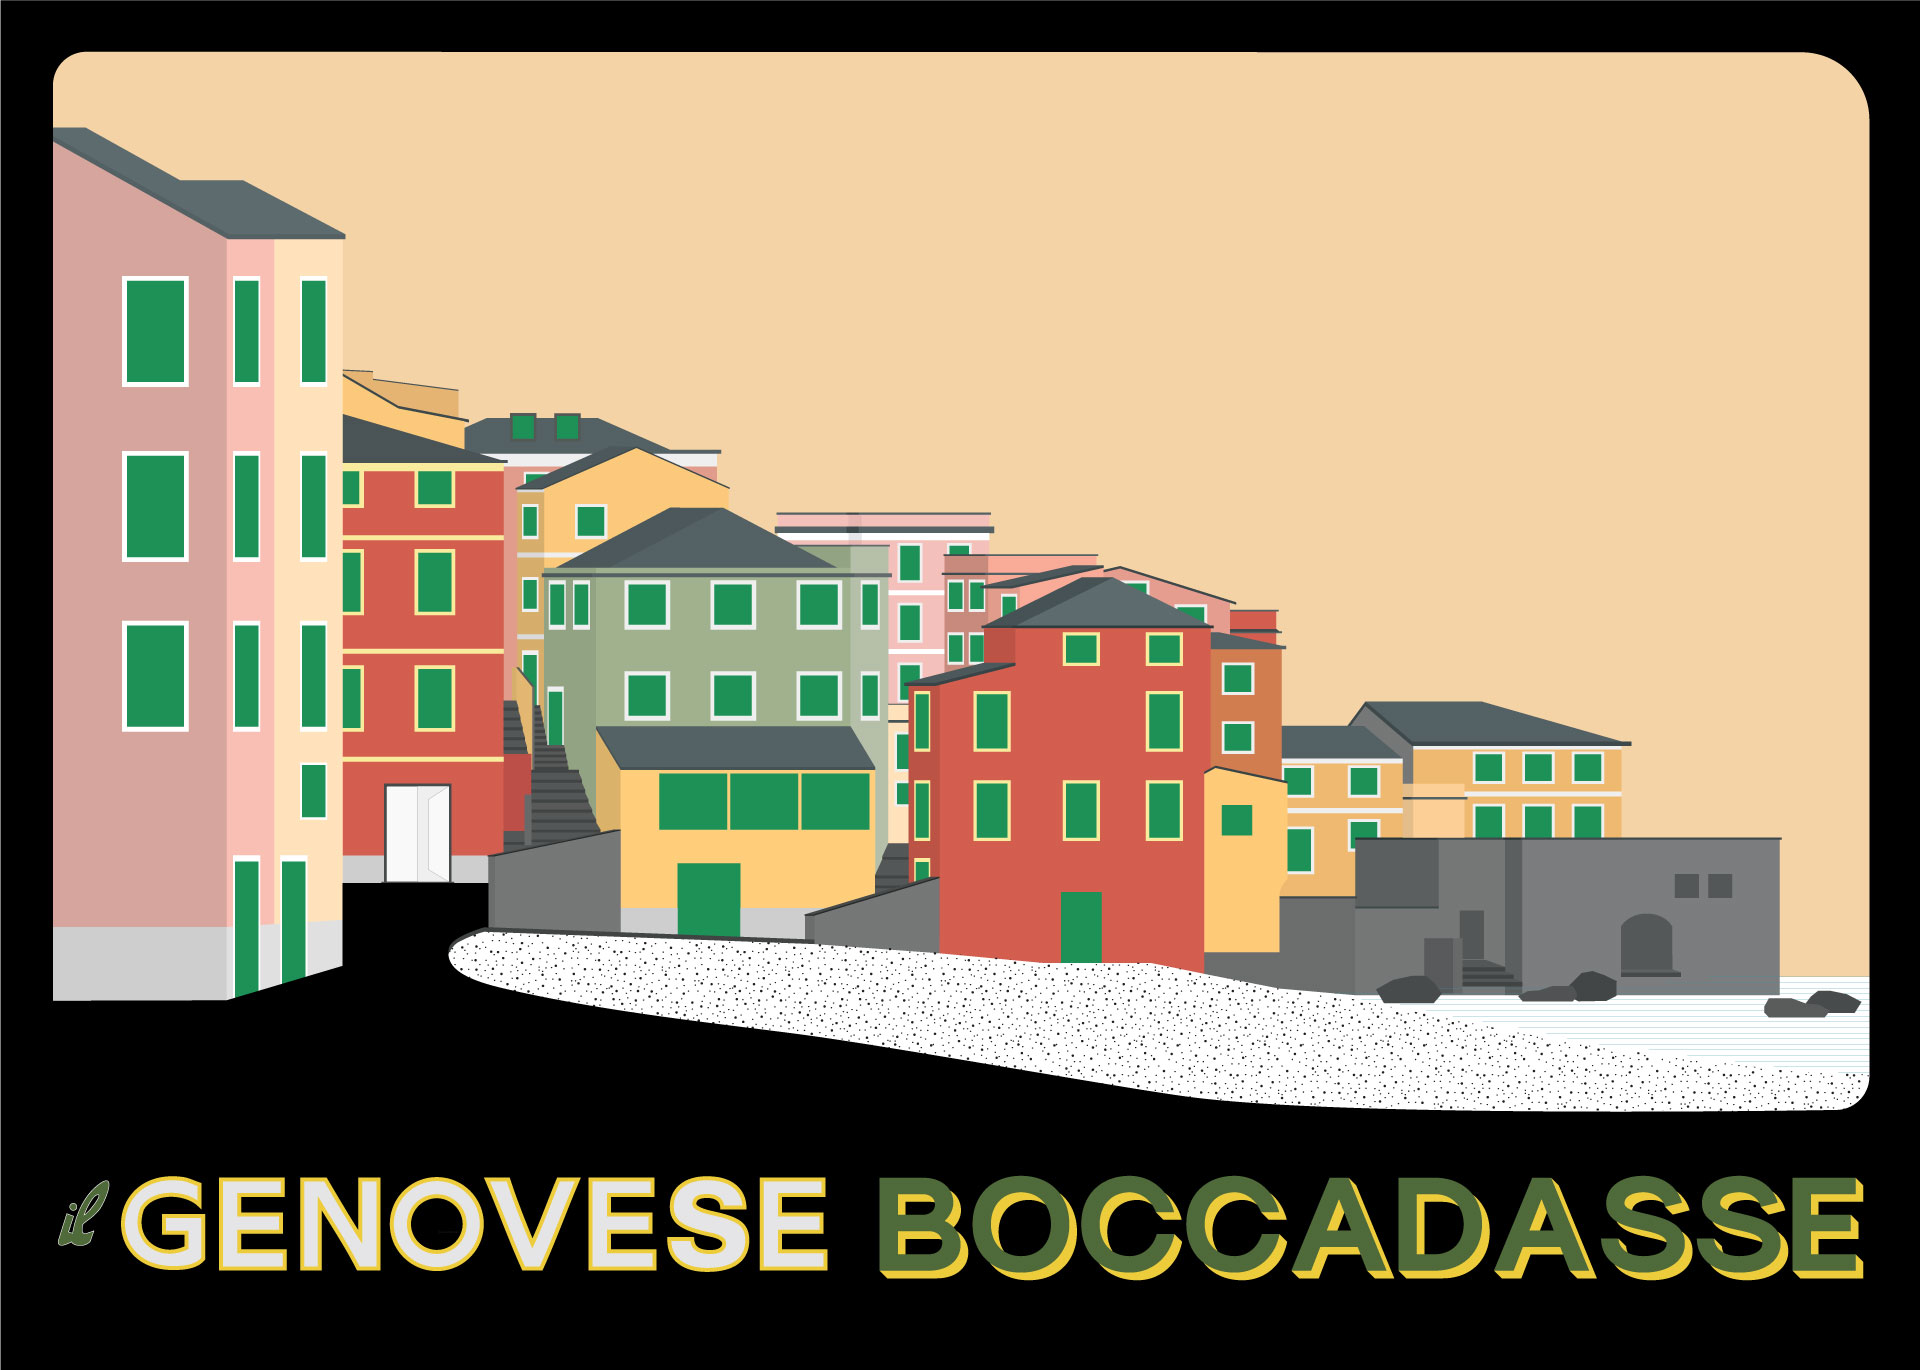 Il Genovese Boccadasse, a contemporary sciamadda © LINEARAMA-Scelsi - Illustration